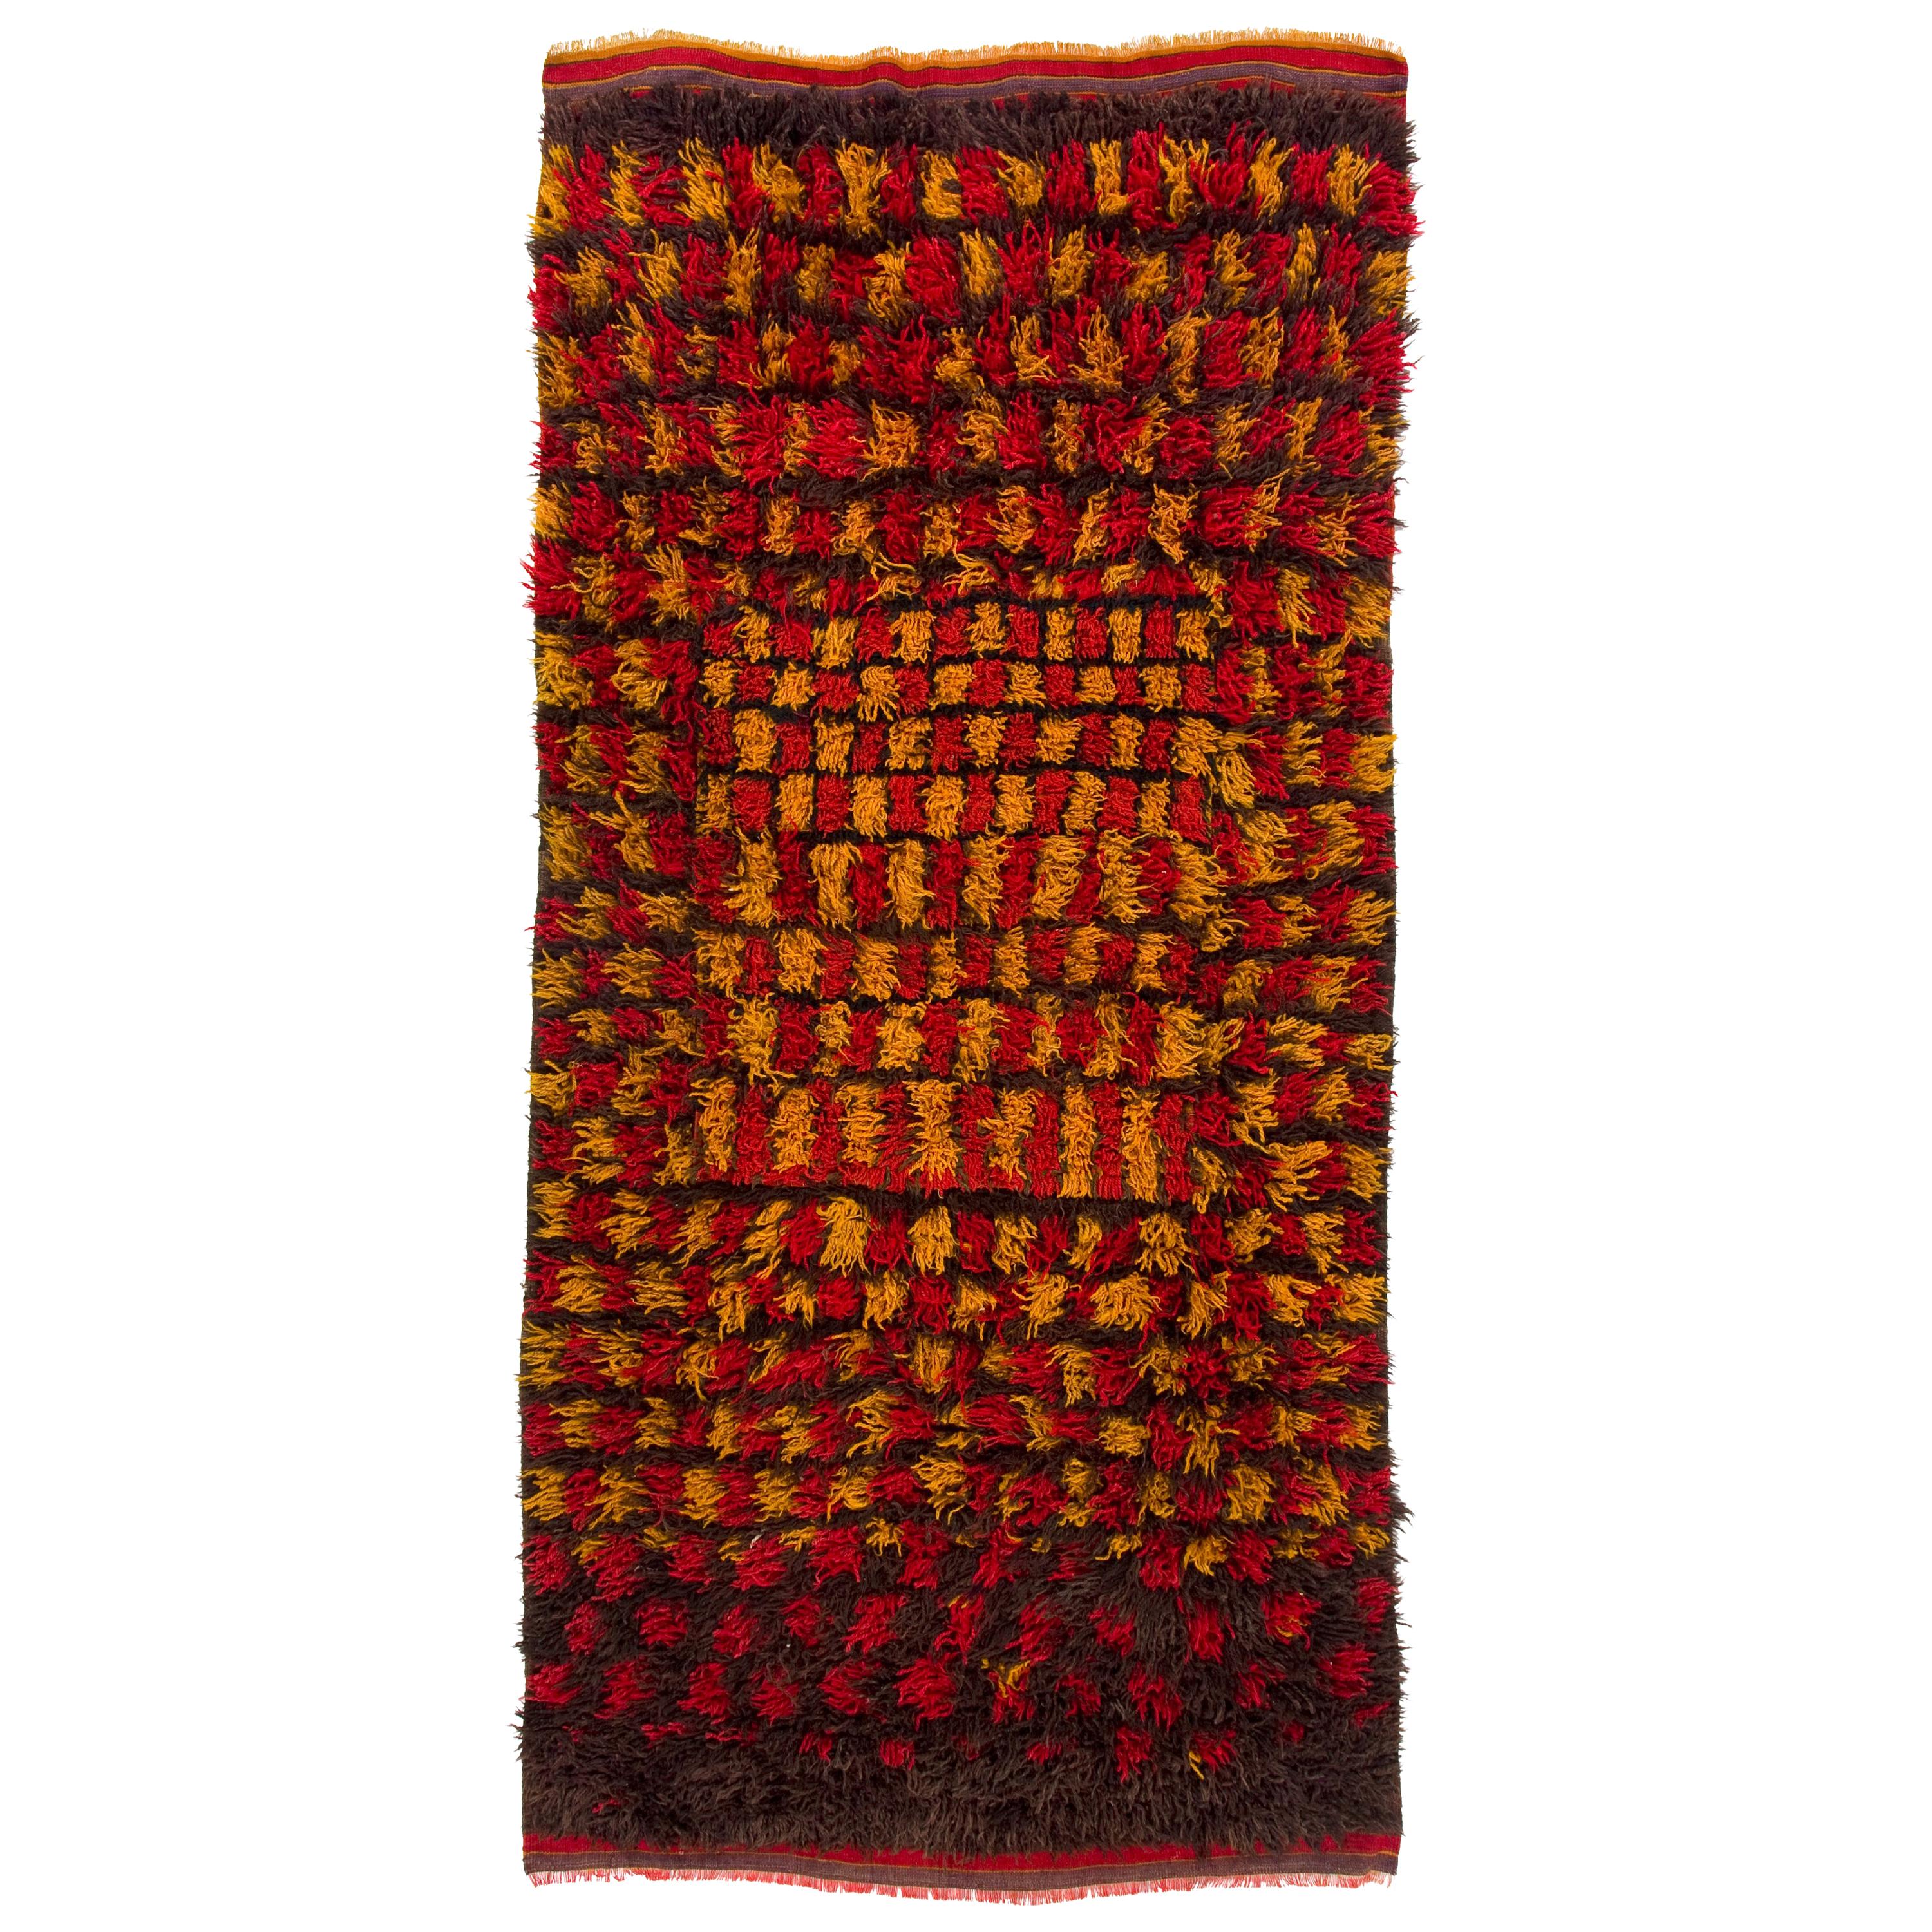 4.8x9.8 Ft Handgefertigter "Tulu" Teppich mit langem Wollflor in Rot, Gelb & Brown Farben